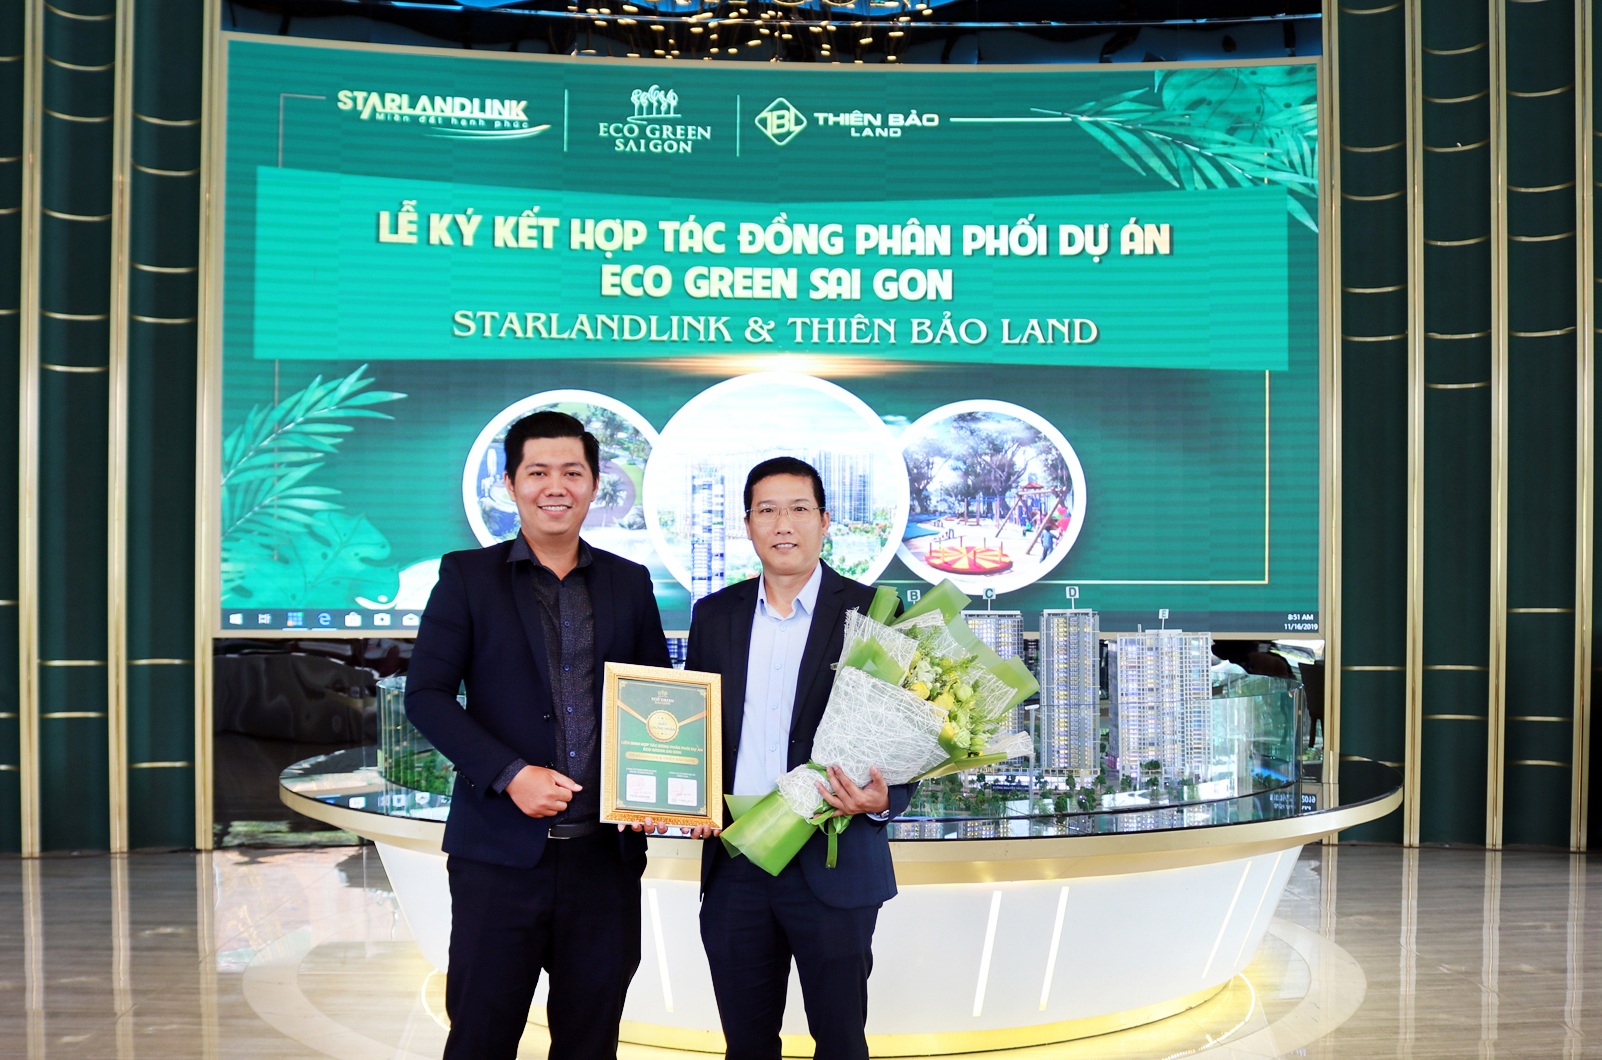 Lễ trao chứng nhận liên minh đồng phân phối F1 giữa Thiên Bảo Land và Starlandlink dưới sự chứng kiến của CĐT Xuân Mai Sài Gòn.